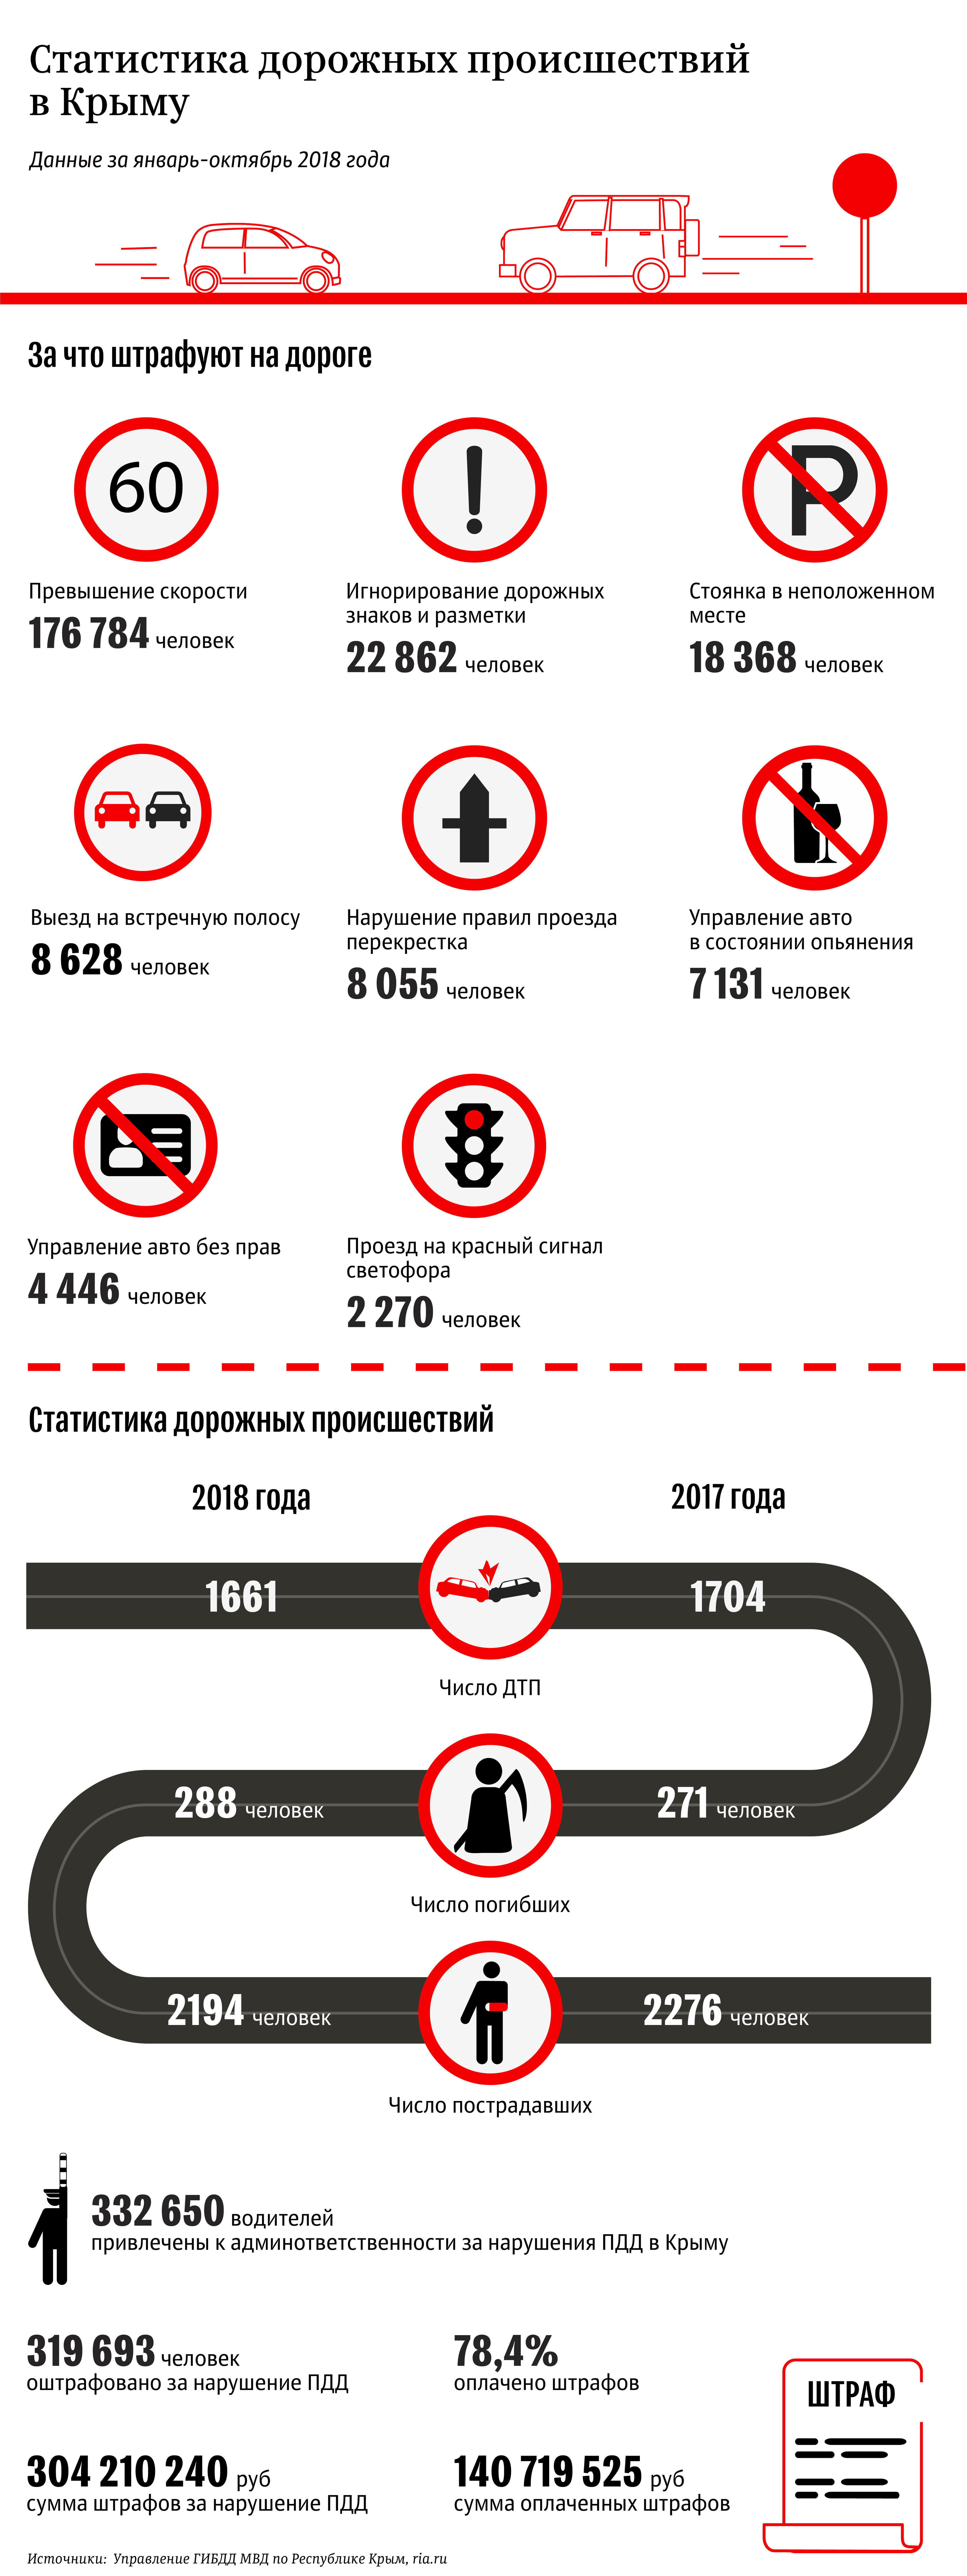 Статистика дорожных происшествий в Крыму